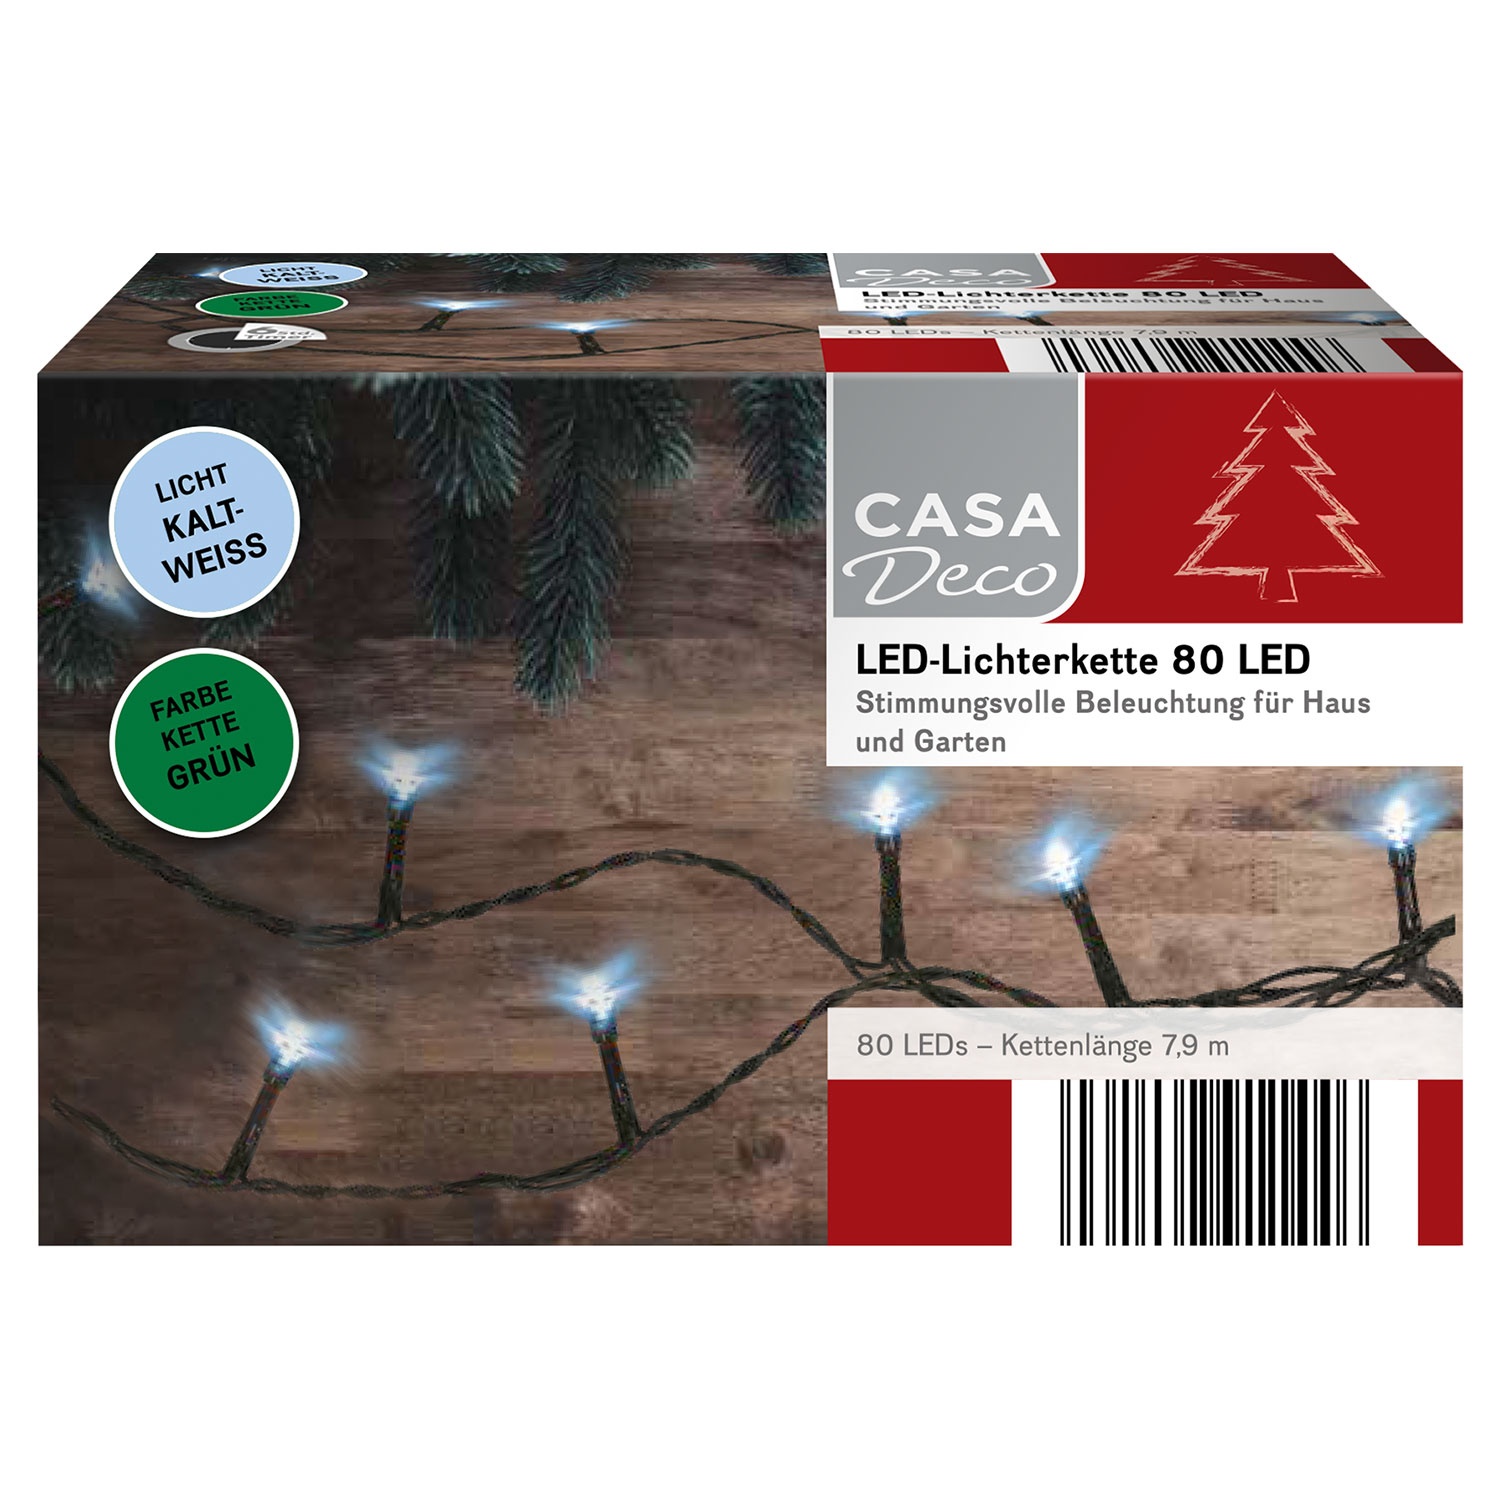 CASA DECO LED-Lichterkette mit 80 LEDs